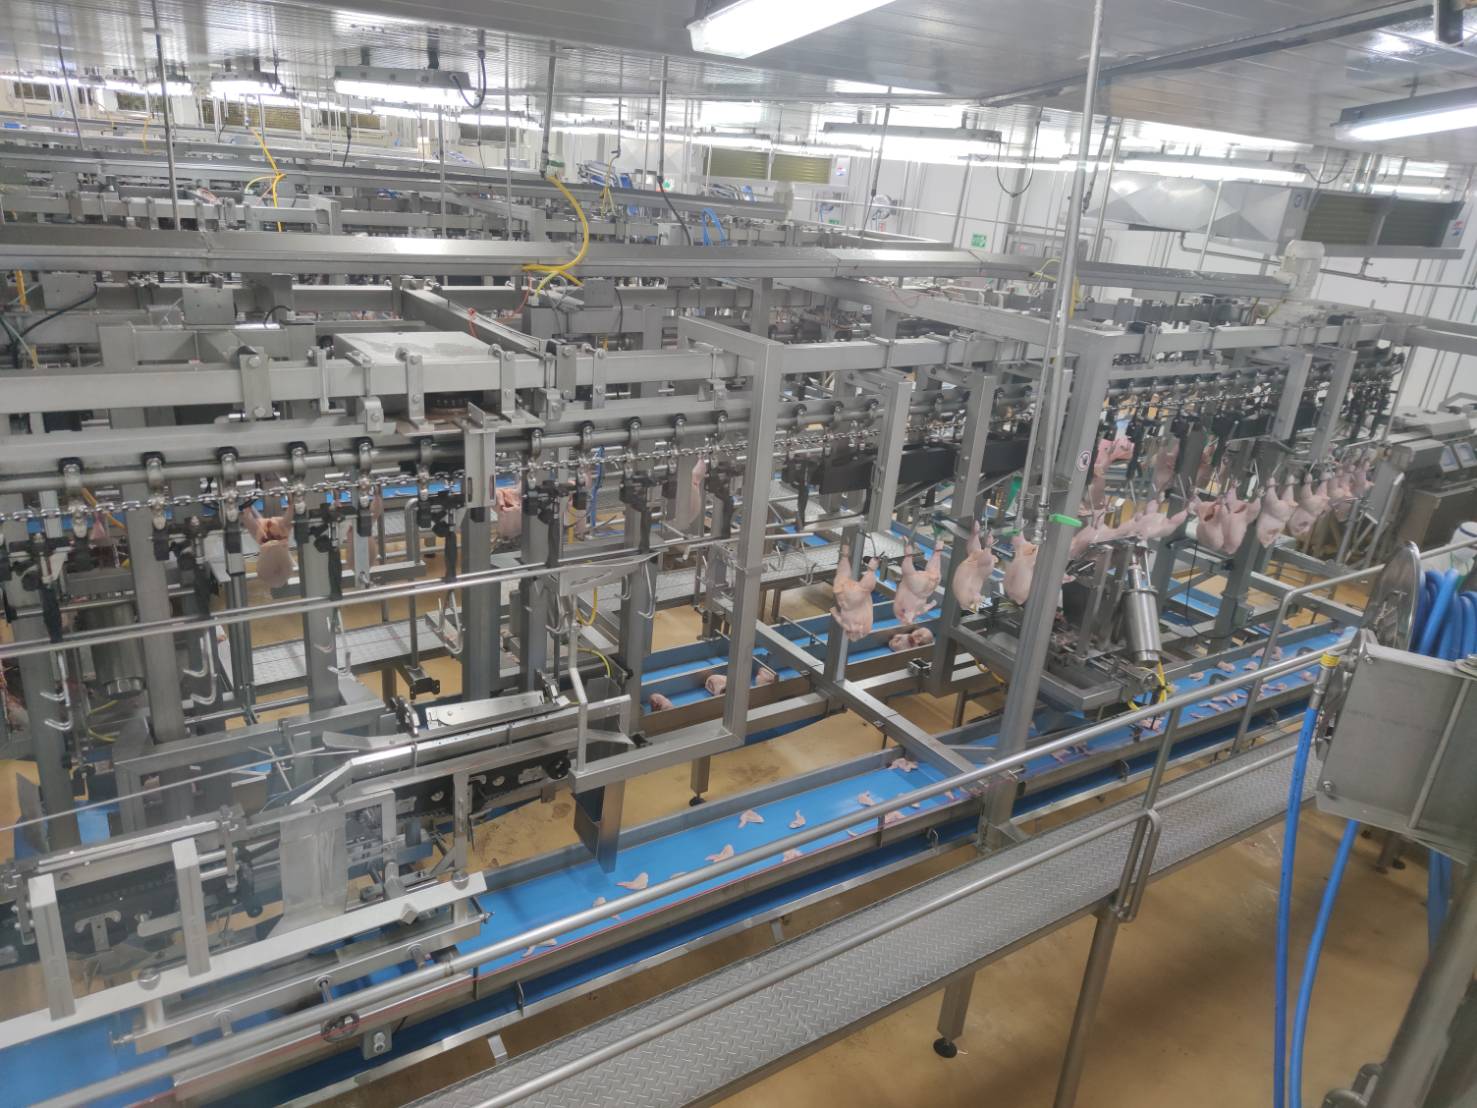 ซีพีเอฟเปิดเทคโนโลยีการผลิตทันสมัยล่าสุด การันตีการผลิตไก่ไทยปลอดภัยมาตรฐานระดับโลก